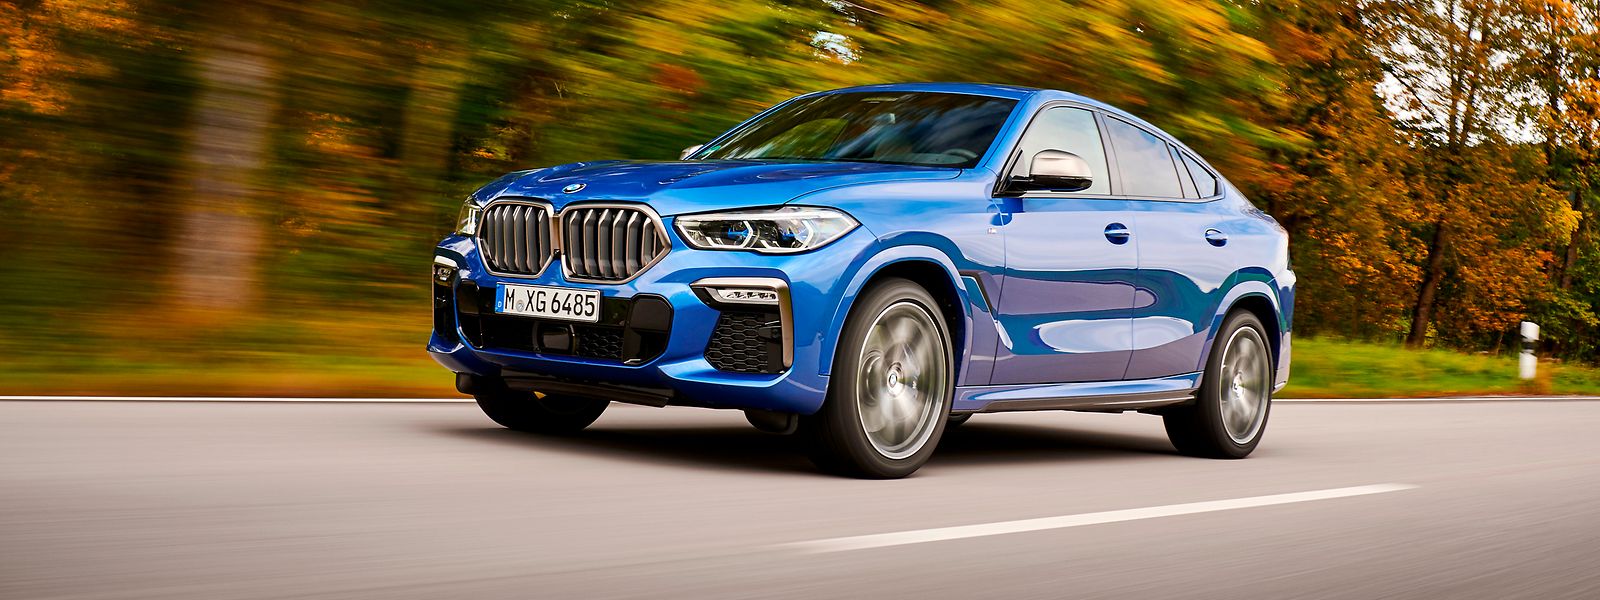 Bulliger Auftritt: Der neue BMW X6 streckt sich auf knapp fünf Meter Länge und ist über zwei Meter breit.